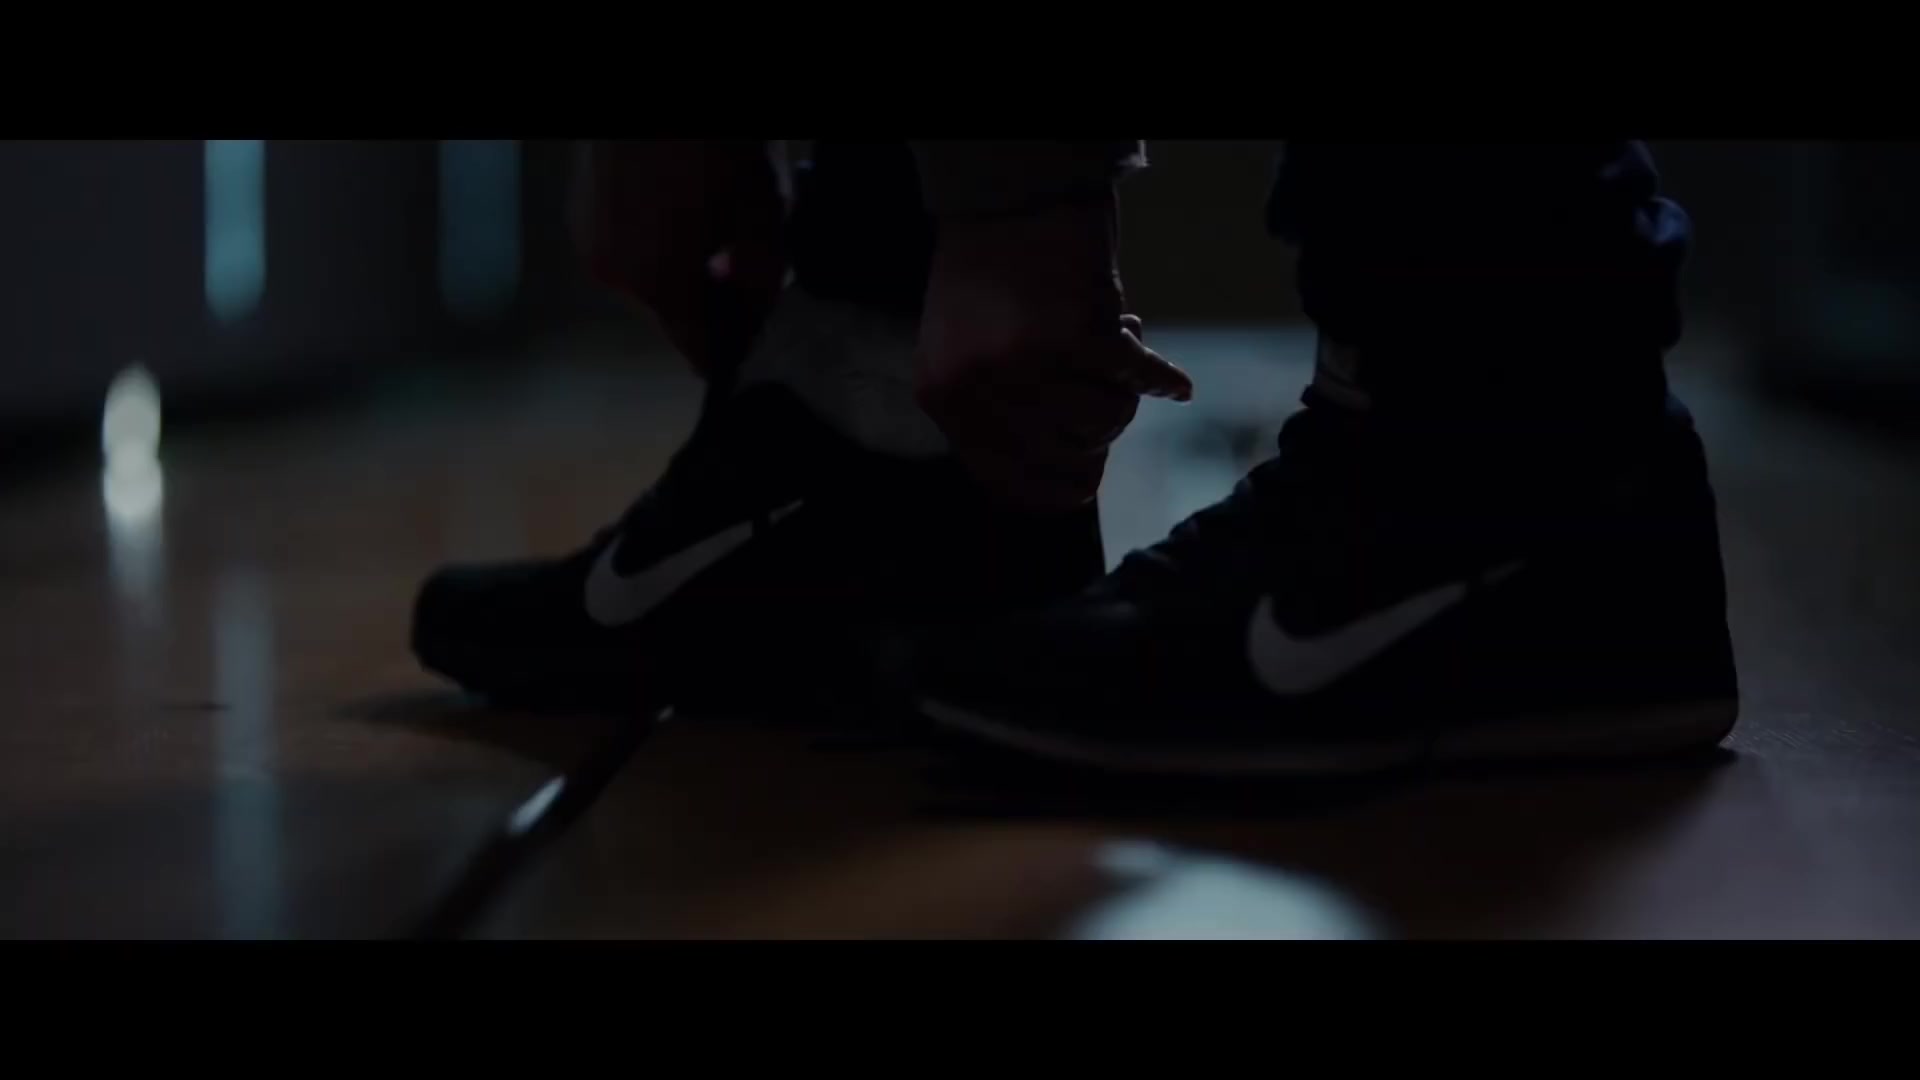 Nike Air Zoom Winflo 5 Sneakers Worn By 